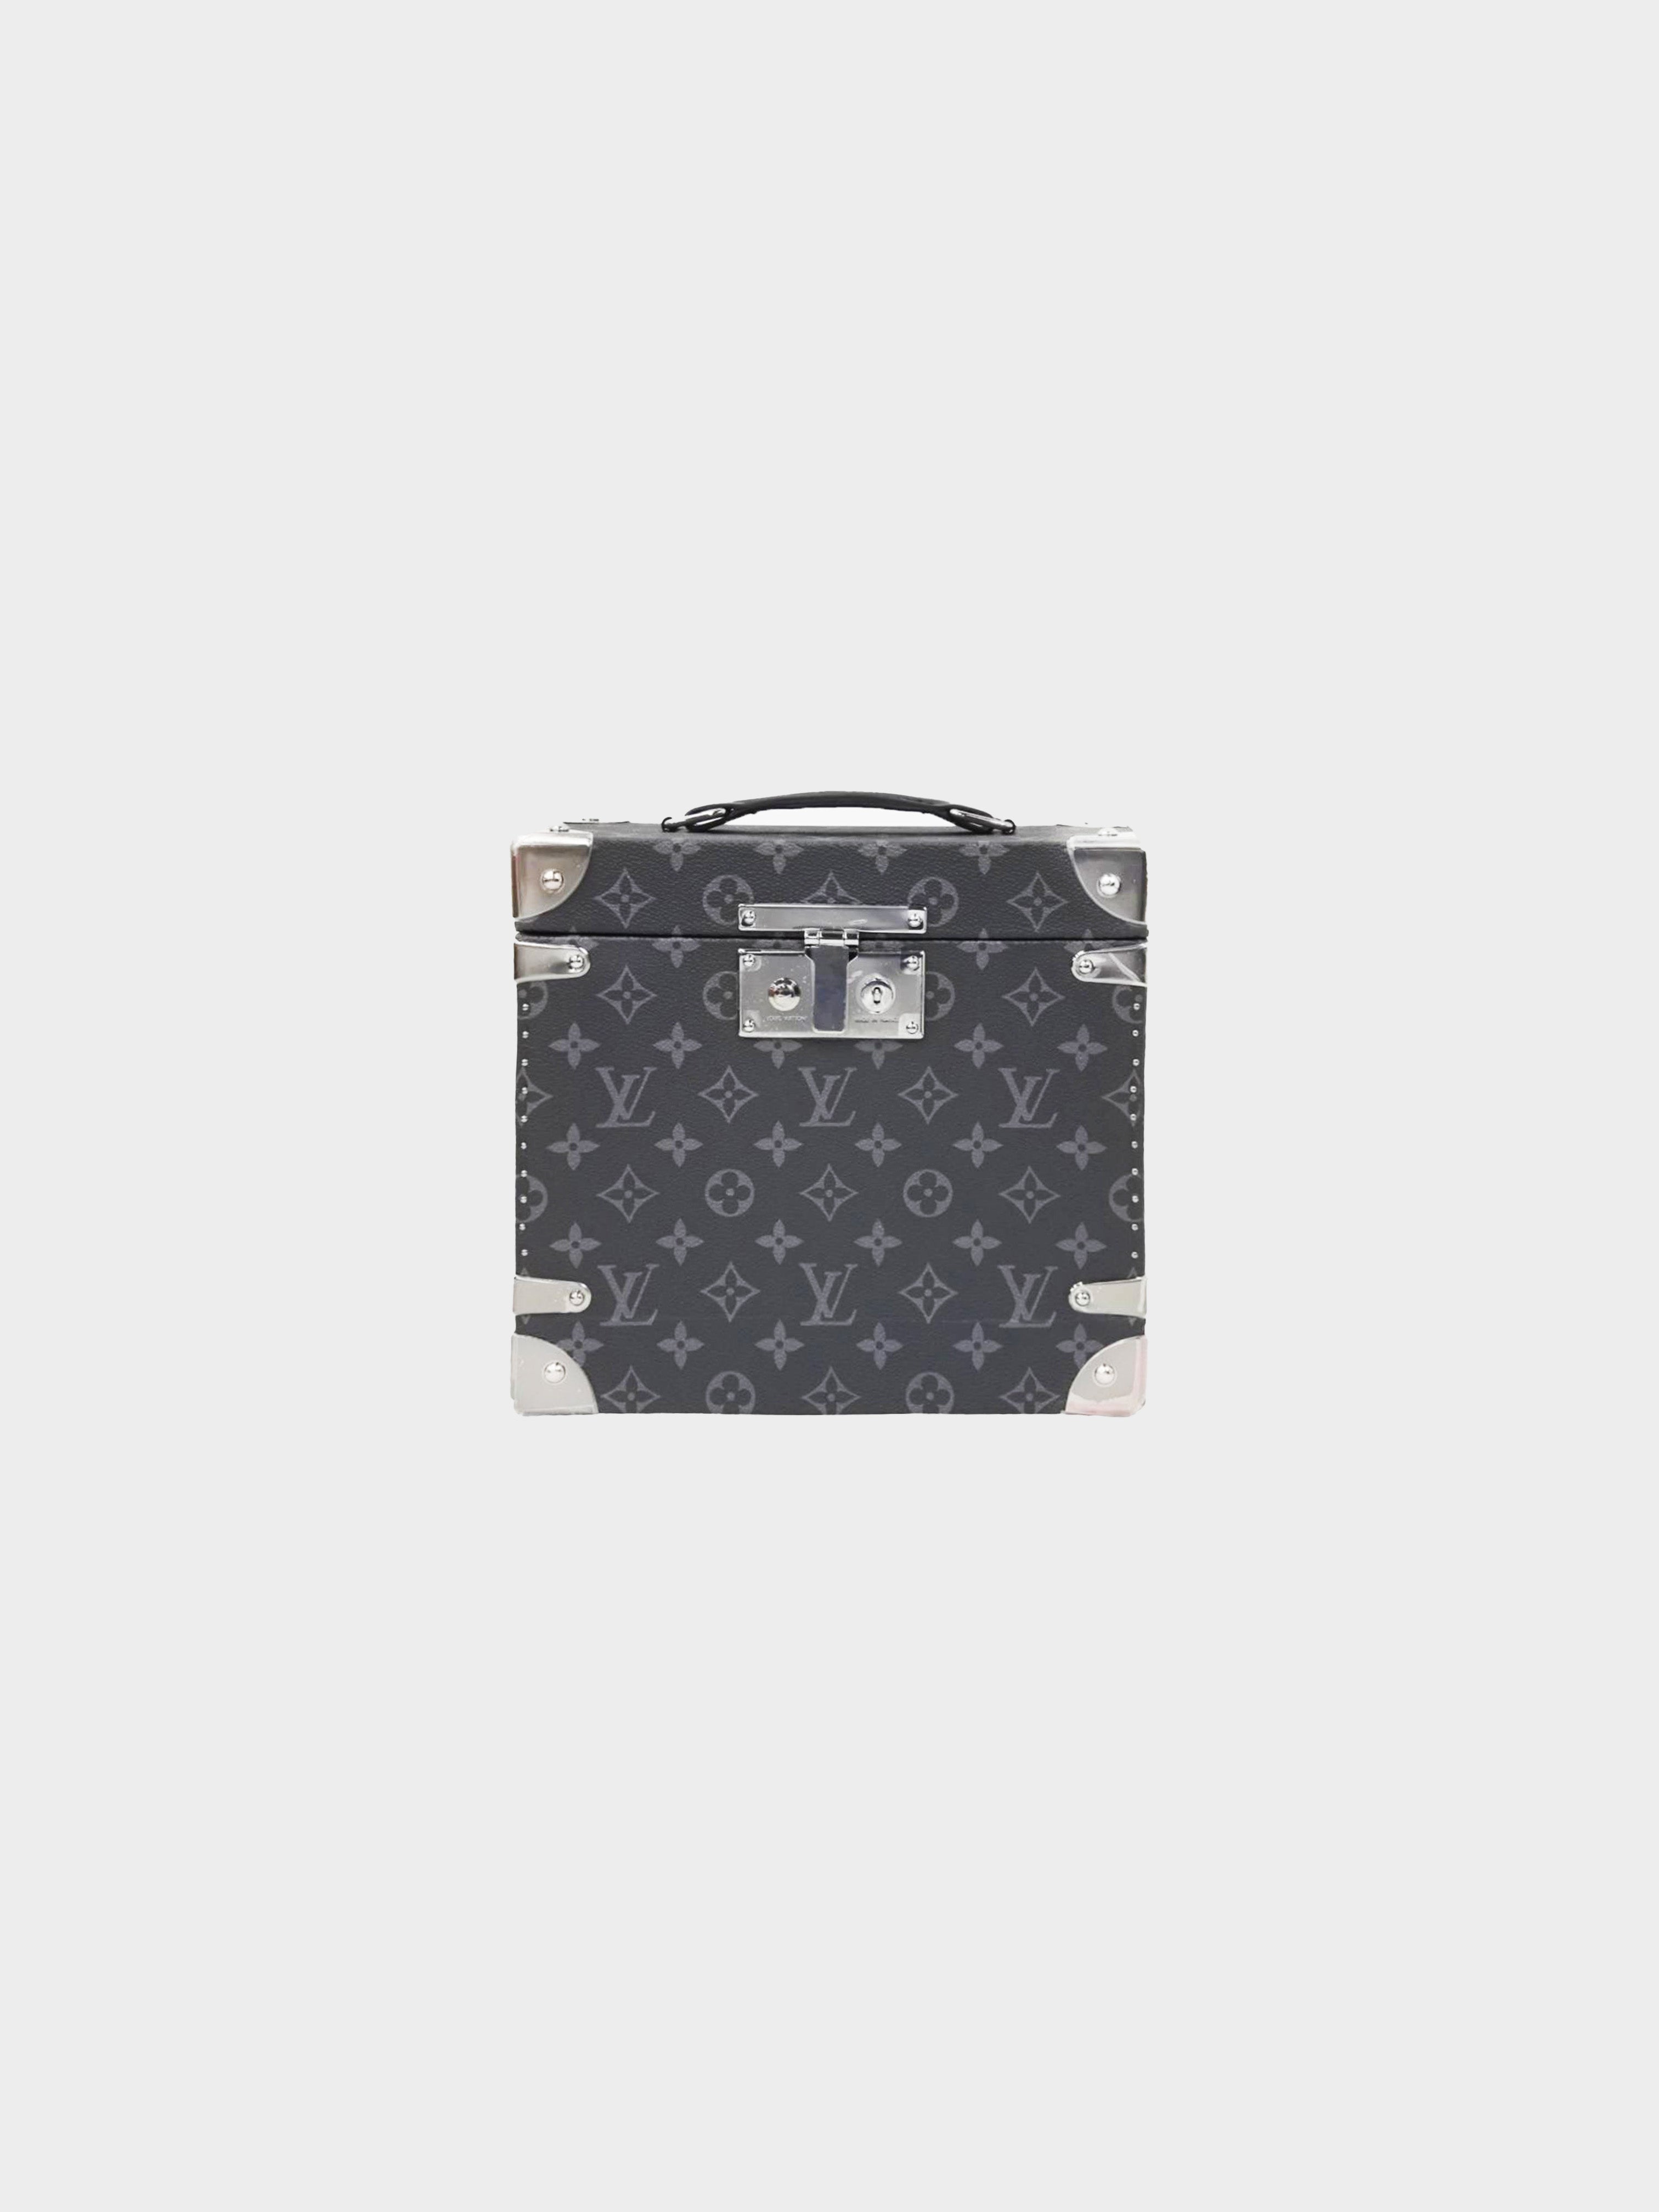 Louis Vuitton 1990s Gray Canvas Handbag · INTO